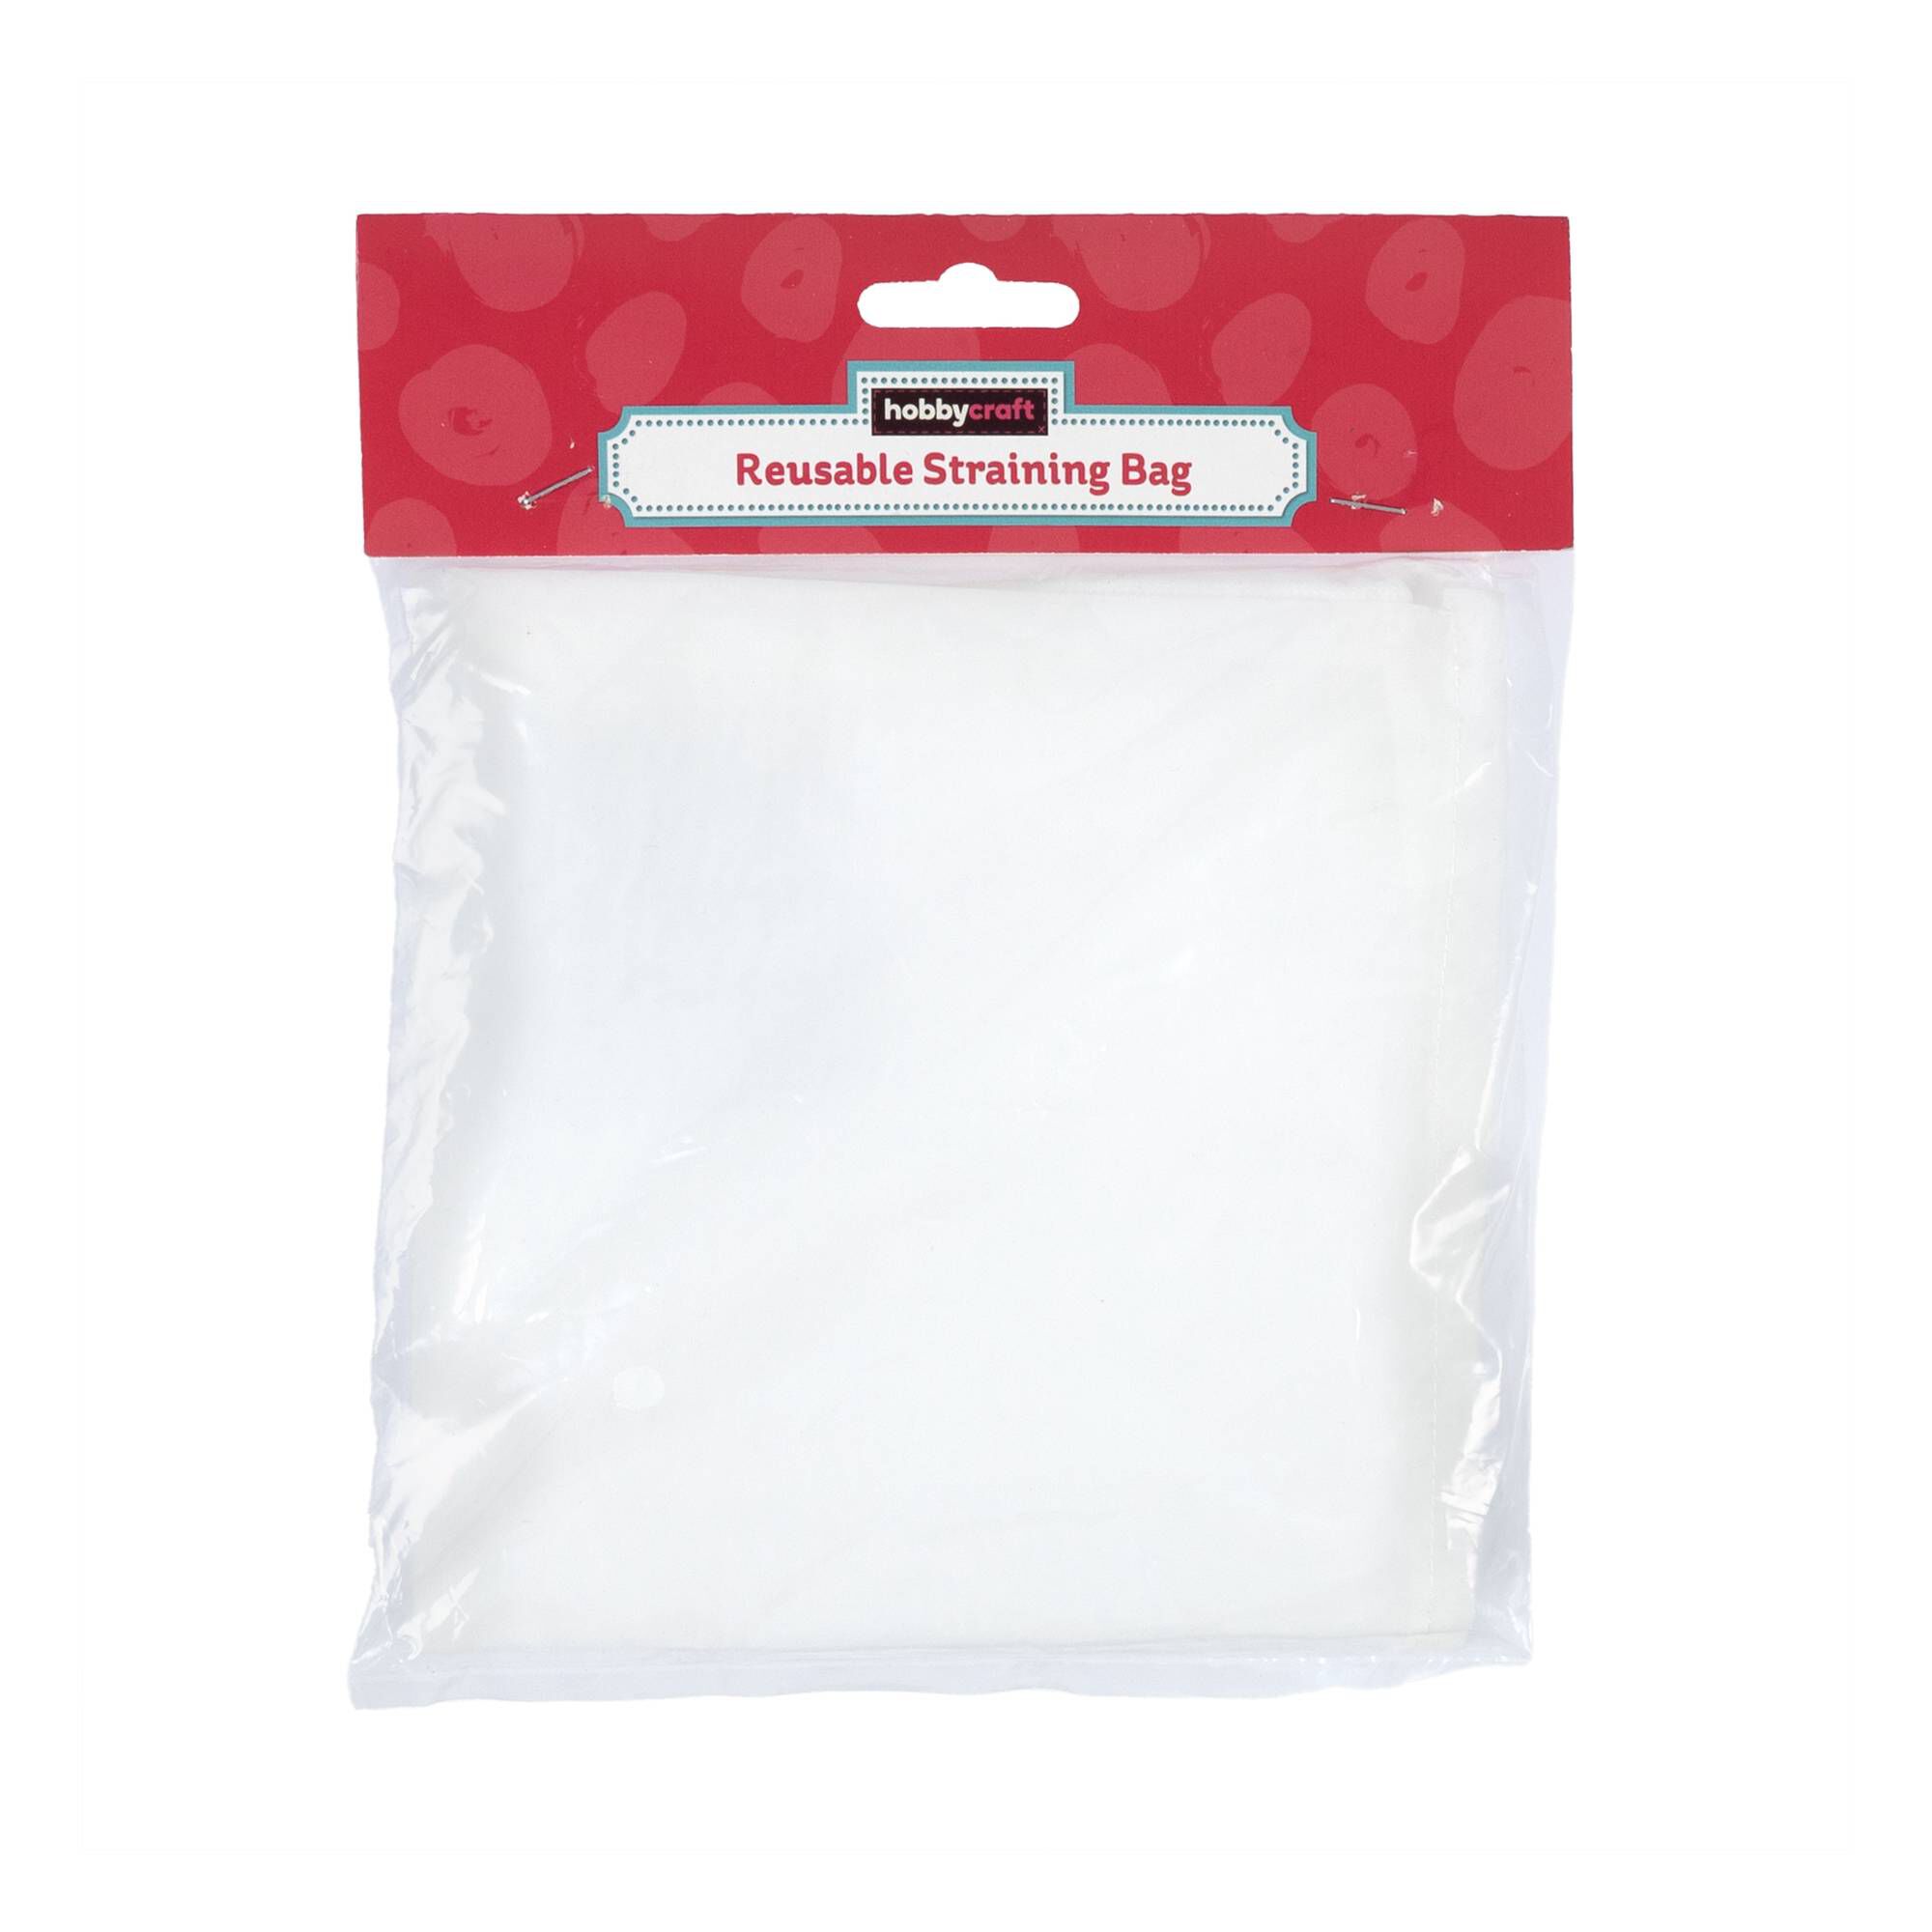 661801 1000 1 reusable straining bag white